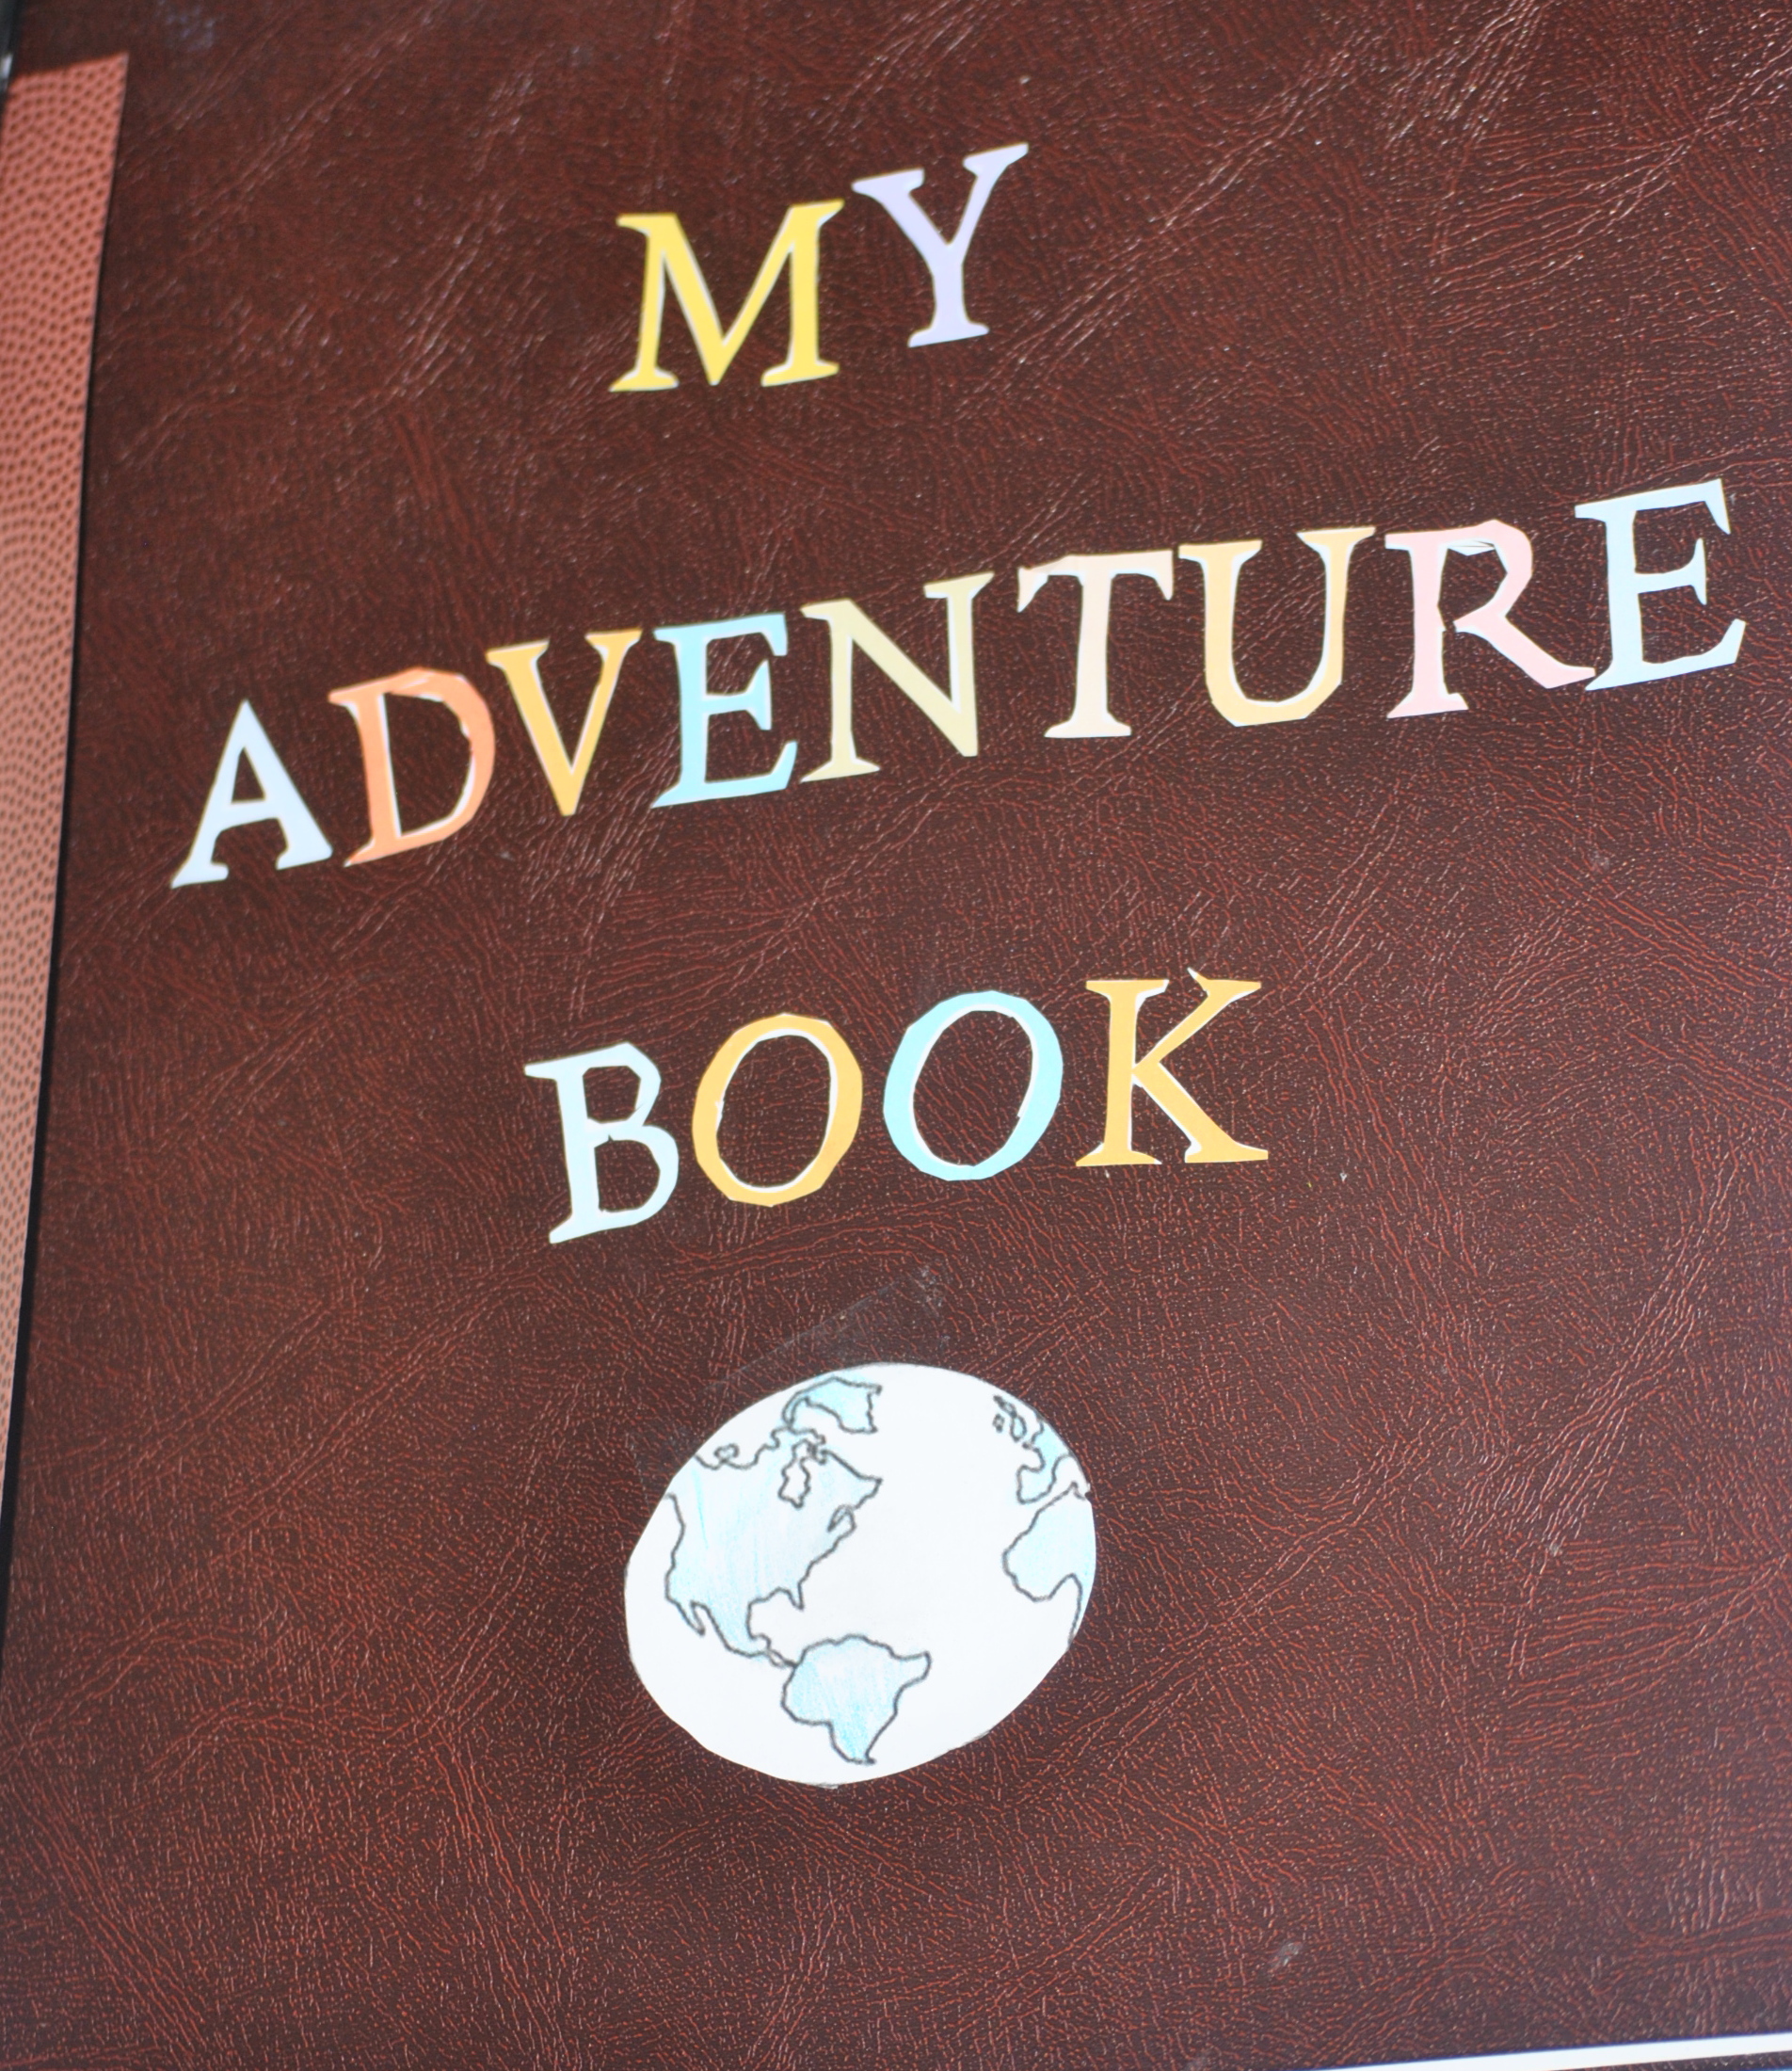 DIY MY ADVENTURE BOOK UP -   Diy adventure book, Adventure book, Up  adventure book